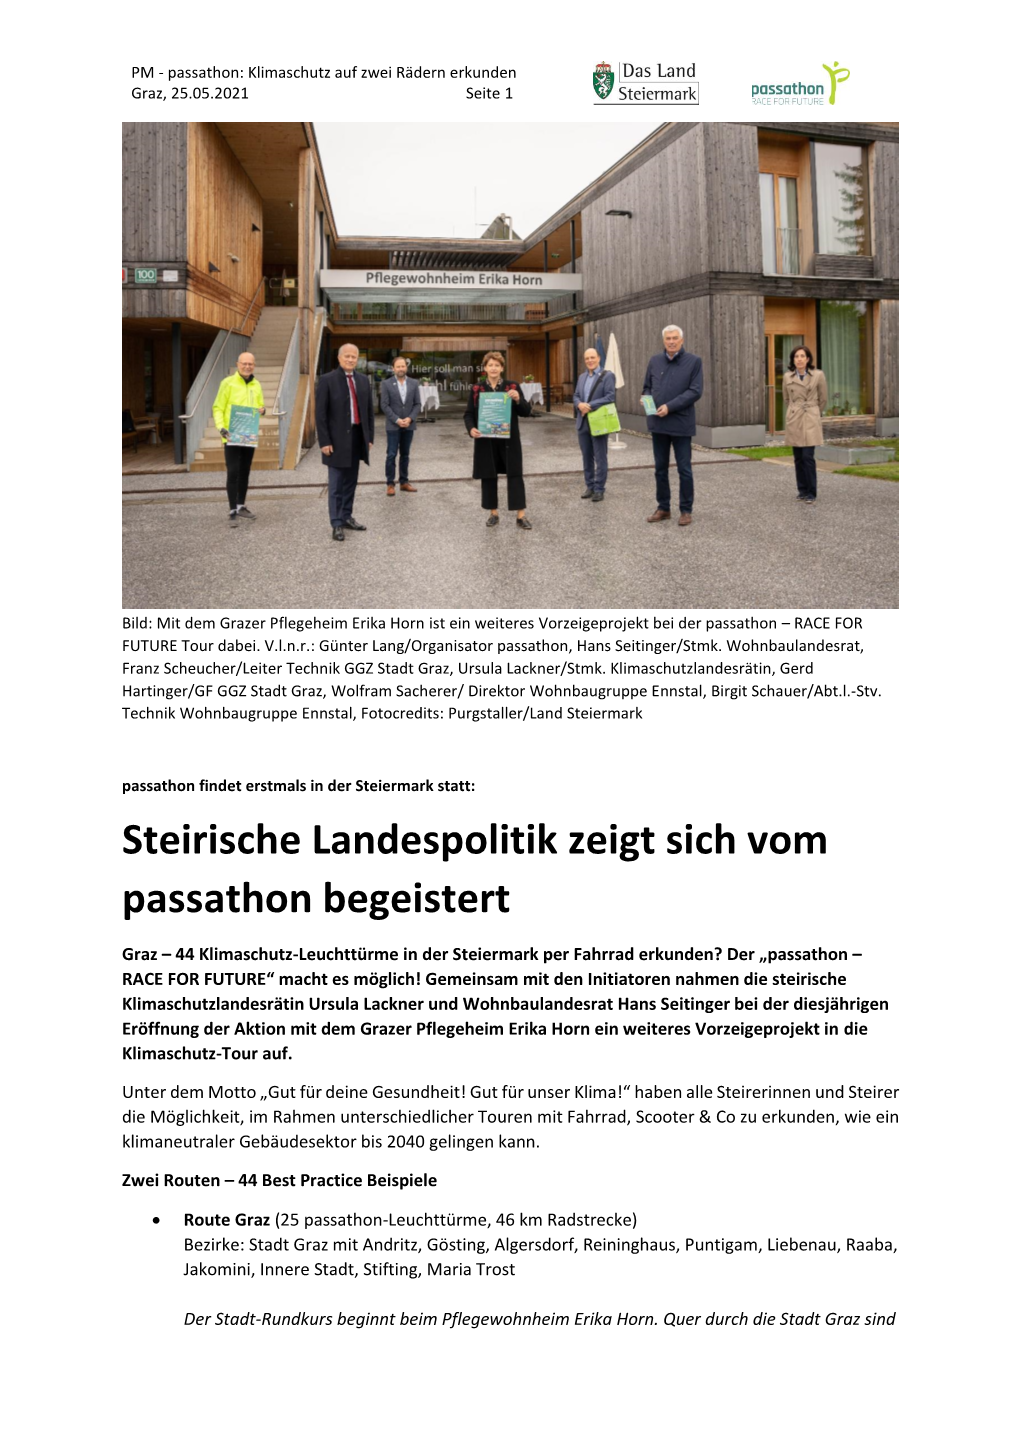 Steirische Landespolitik Zeigt Sich Vom Passathon Begeistert.Pdf Pressemitteilung Als PDF Downloaden